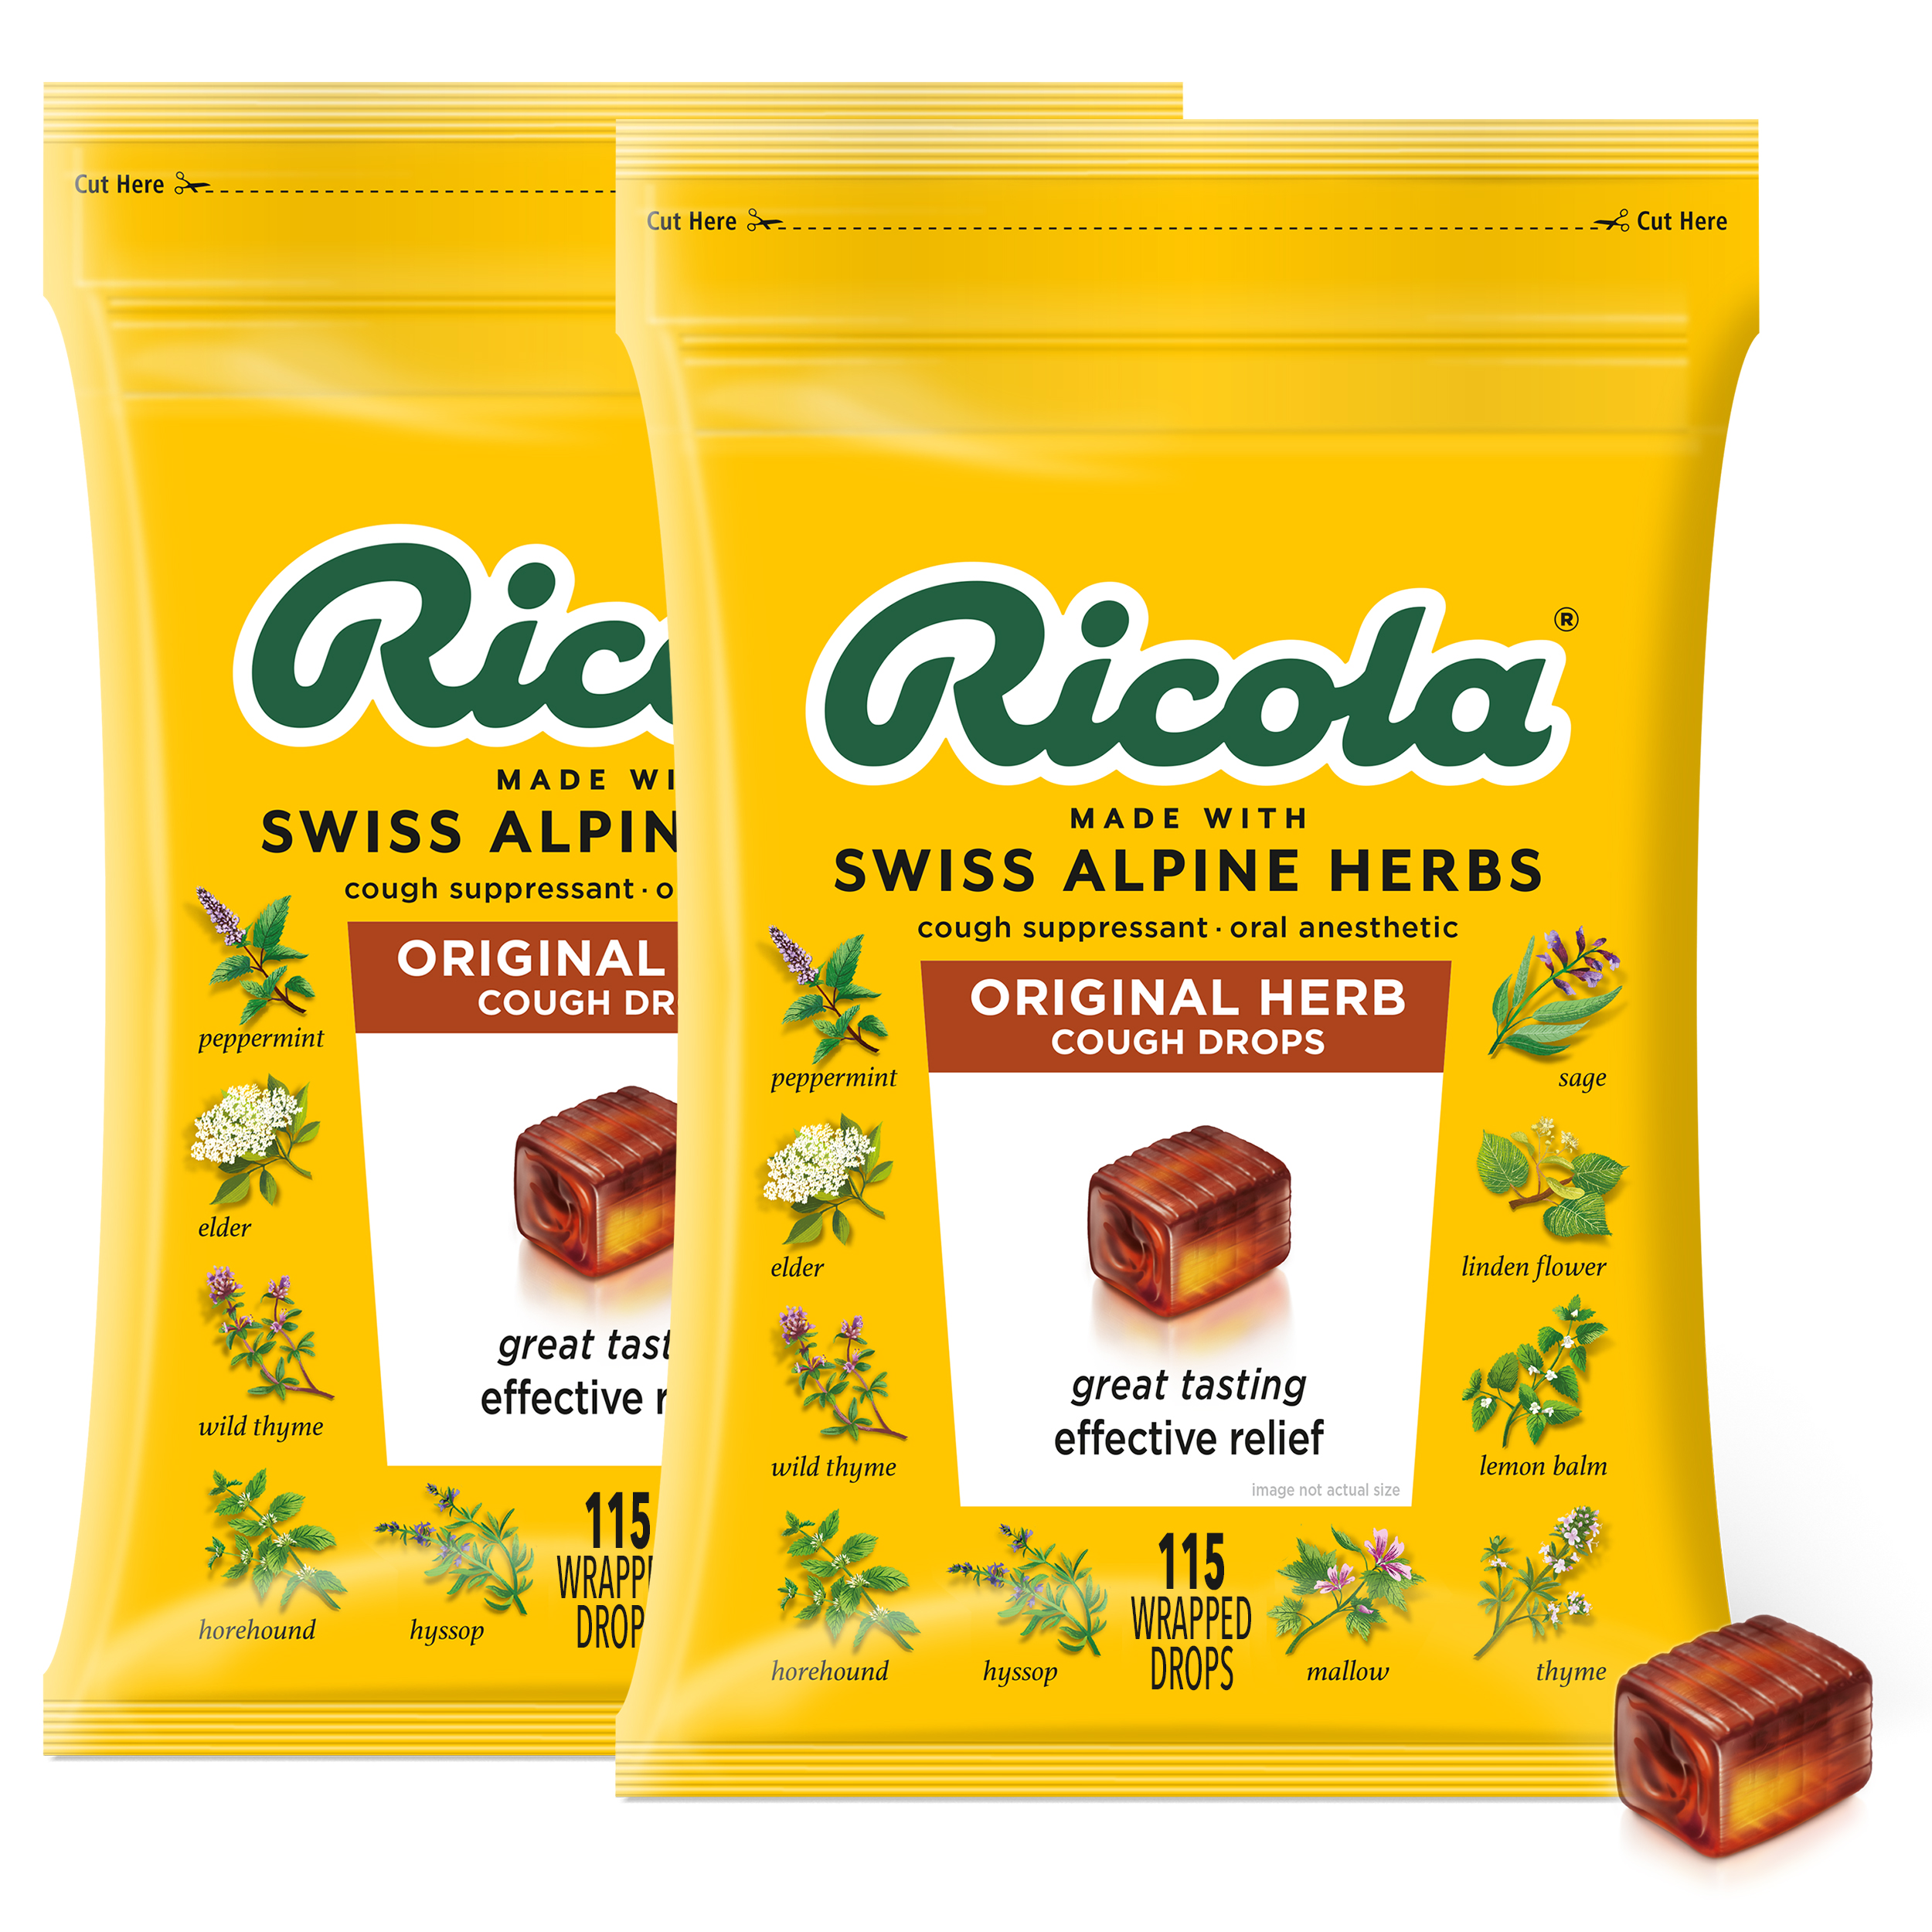 Ricola Swiss herbs sweets 250 gr CHOCKIES candies